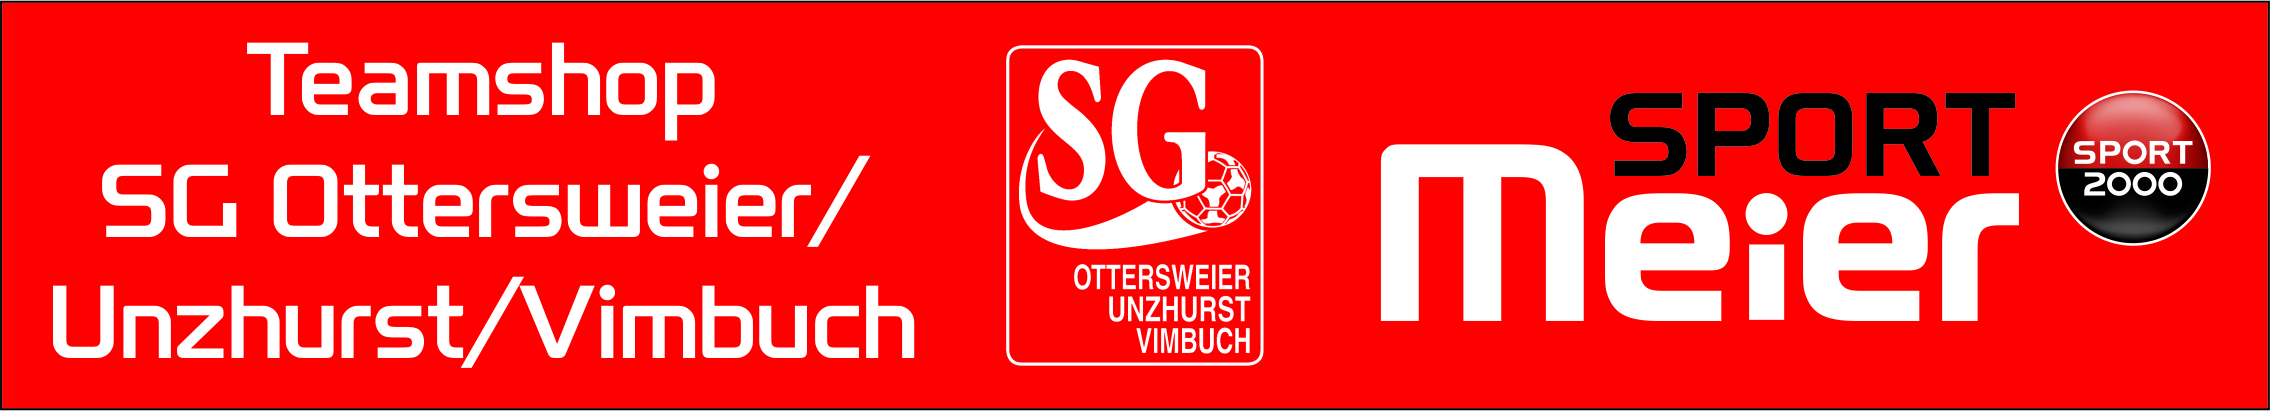 SG Ottersweier Unzhurst Vimbuch Title Image